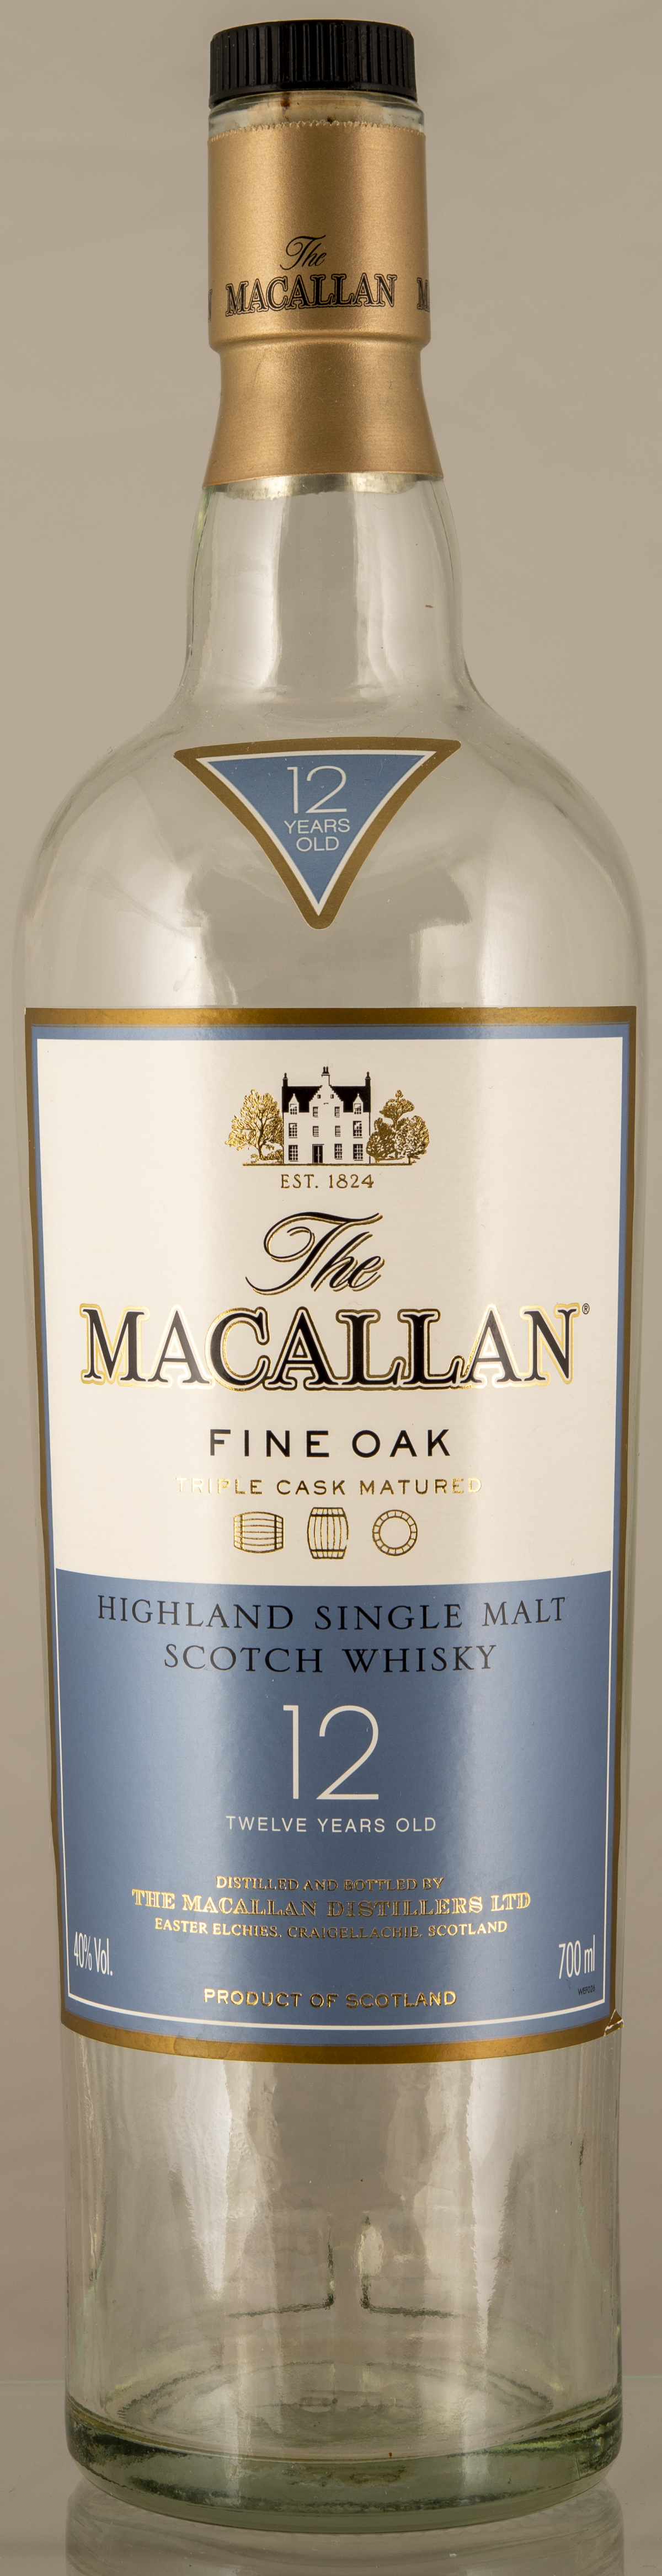 Billede: D85_8402 - MacAllan Fine Oak 12 - bottle front.jpg